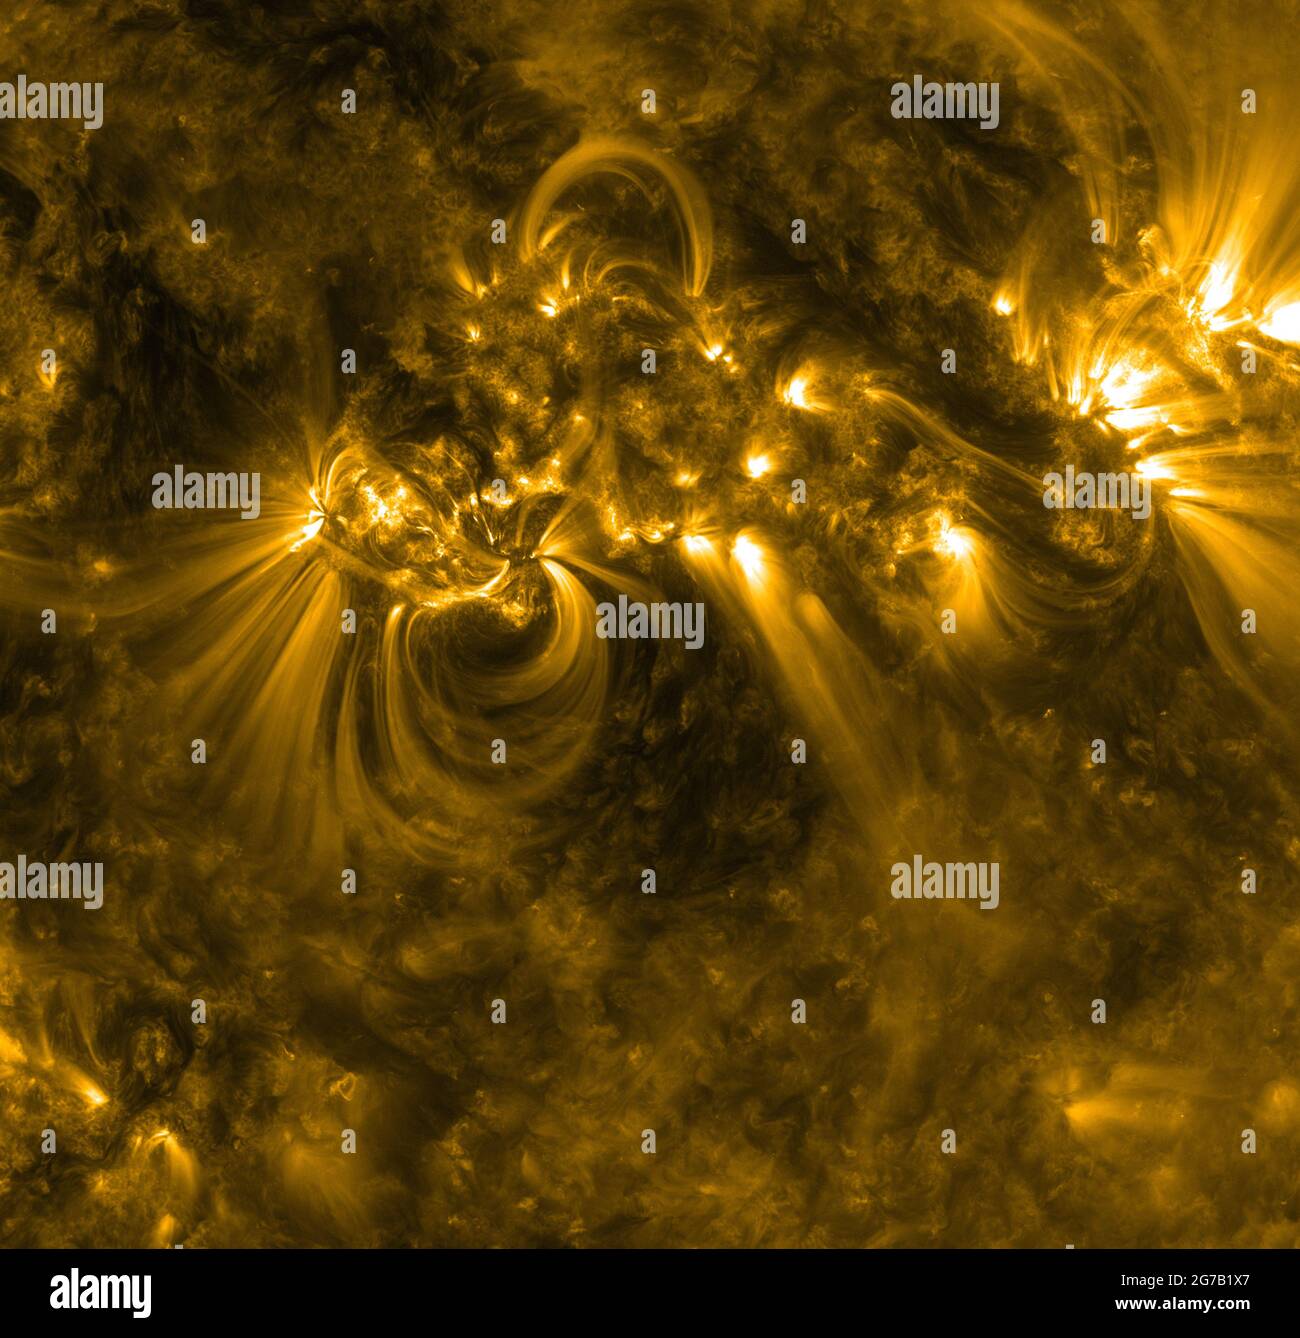 Attività al sole. Il 1302 settembre 2011, l'Osservatorio della dinamica solare (SDO) ha catturato questa drammatica immagine di Sunspot 28 con l'Advanced Imaging Assembly (AIA). AIA acquisisce immagini in 10 diverse lunghezze d'onda della luce. Questo è mostrato in 171 Angstrom, in genere colorato in giallo su immagini SDO. Le linee sottili e sussurre sono chiamate loop coronali e sono realizzate in materiale solare caldo – particelle cariche chiamate plasma – che si raccolgono intorno a campi magnetici invisibili che si avvolgono dal sole. Una versione ottimizzata e digitale di un'immagine della NASA / Credit NASA / Solar Dynamics Observatory Foto Stock